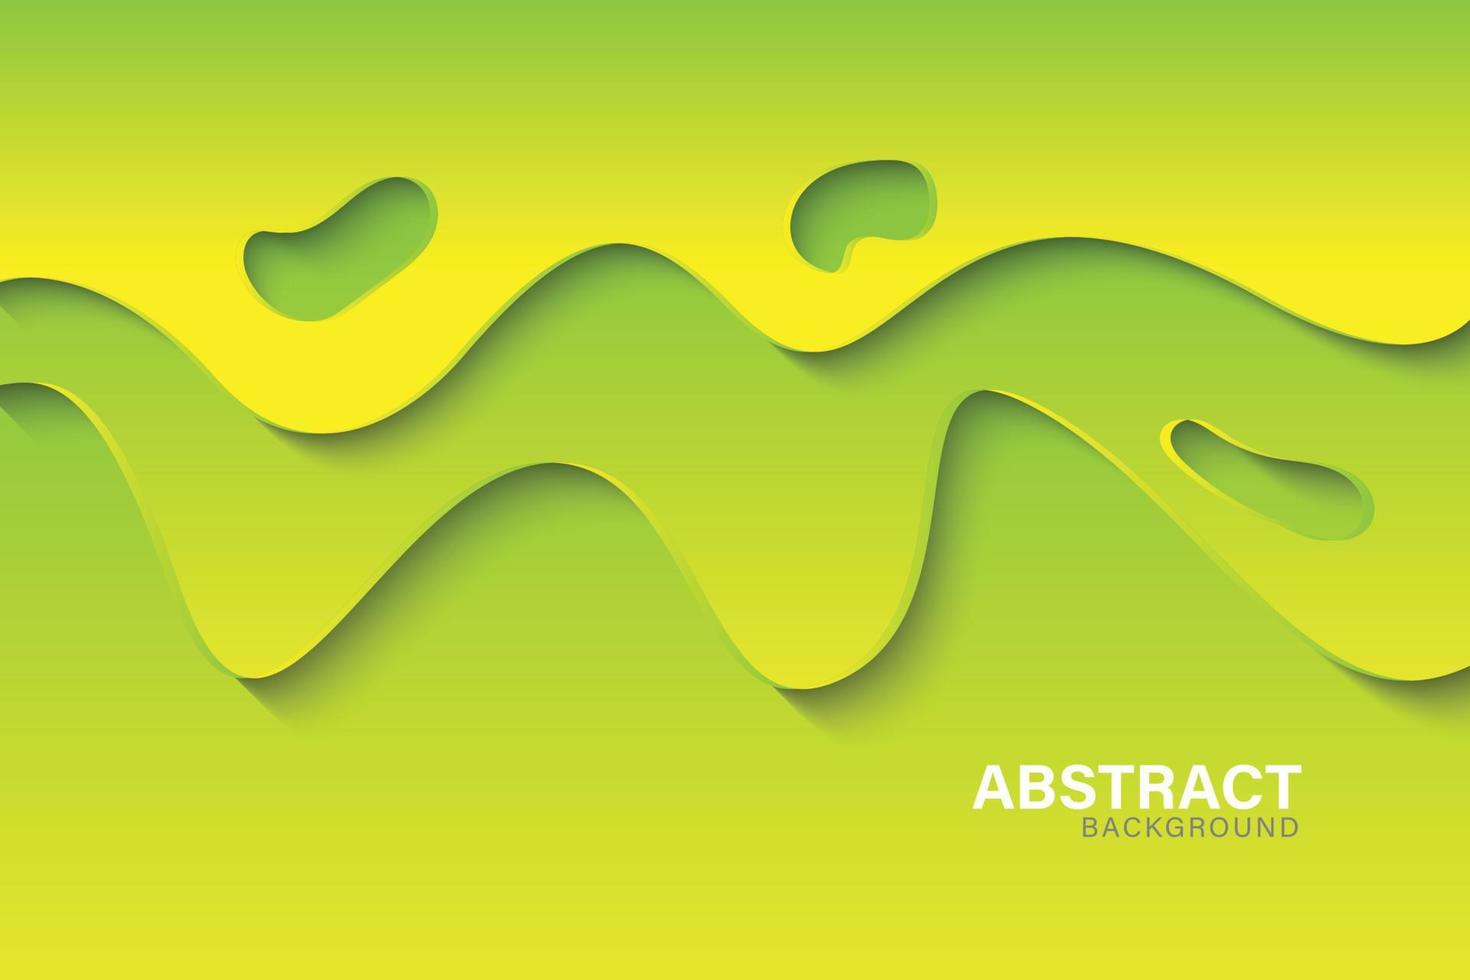 fond abstrait fond de couleur vert et jaune élément de conception d'art abstrait pour bannières web, affiches, vecteur